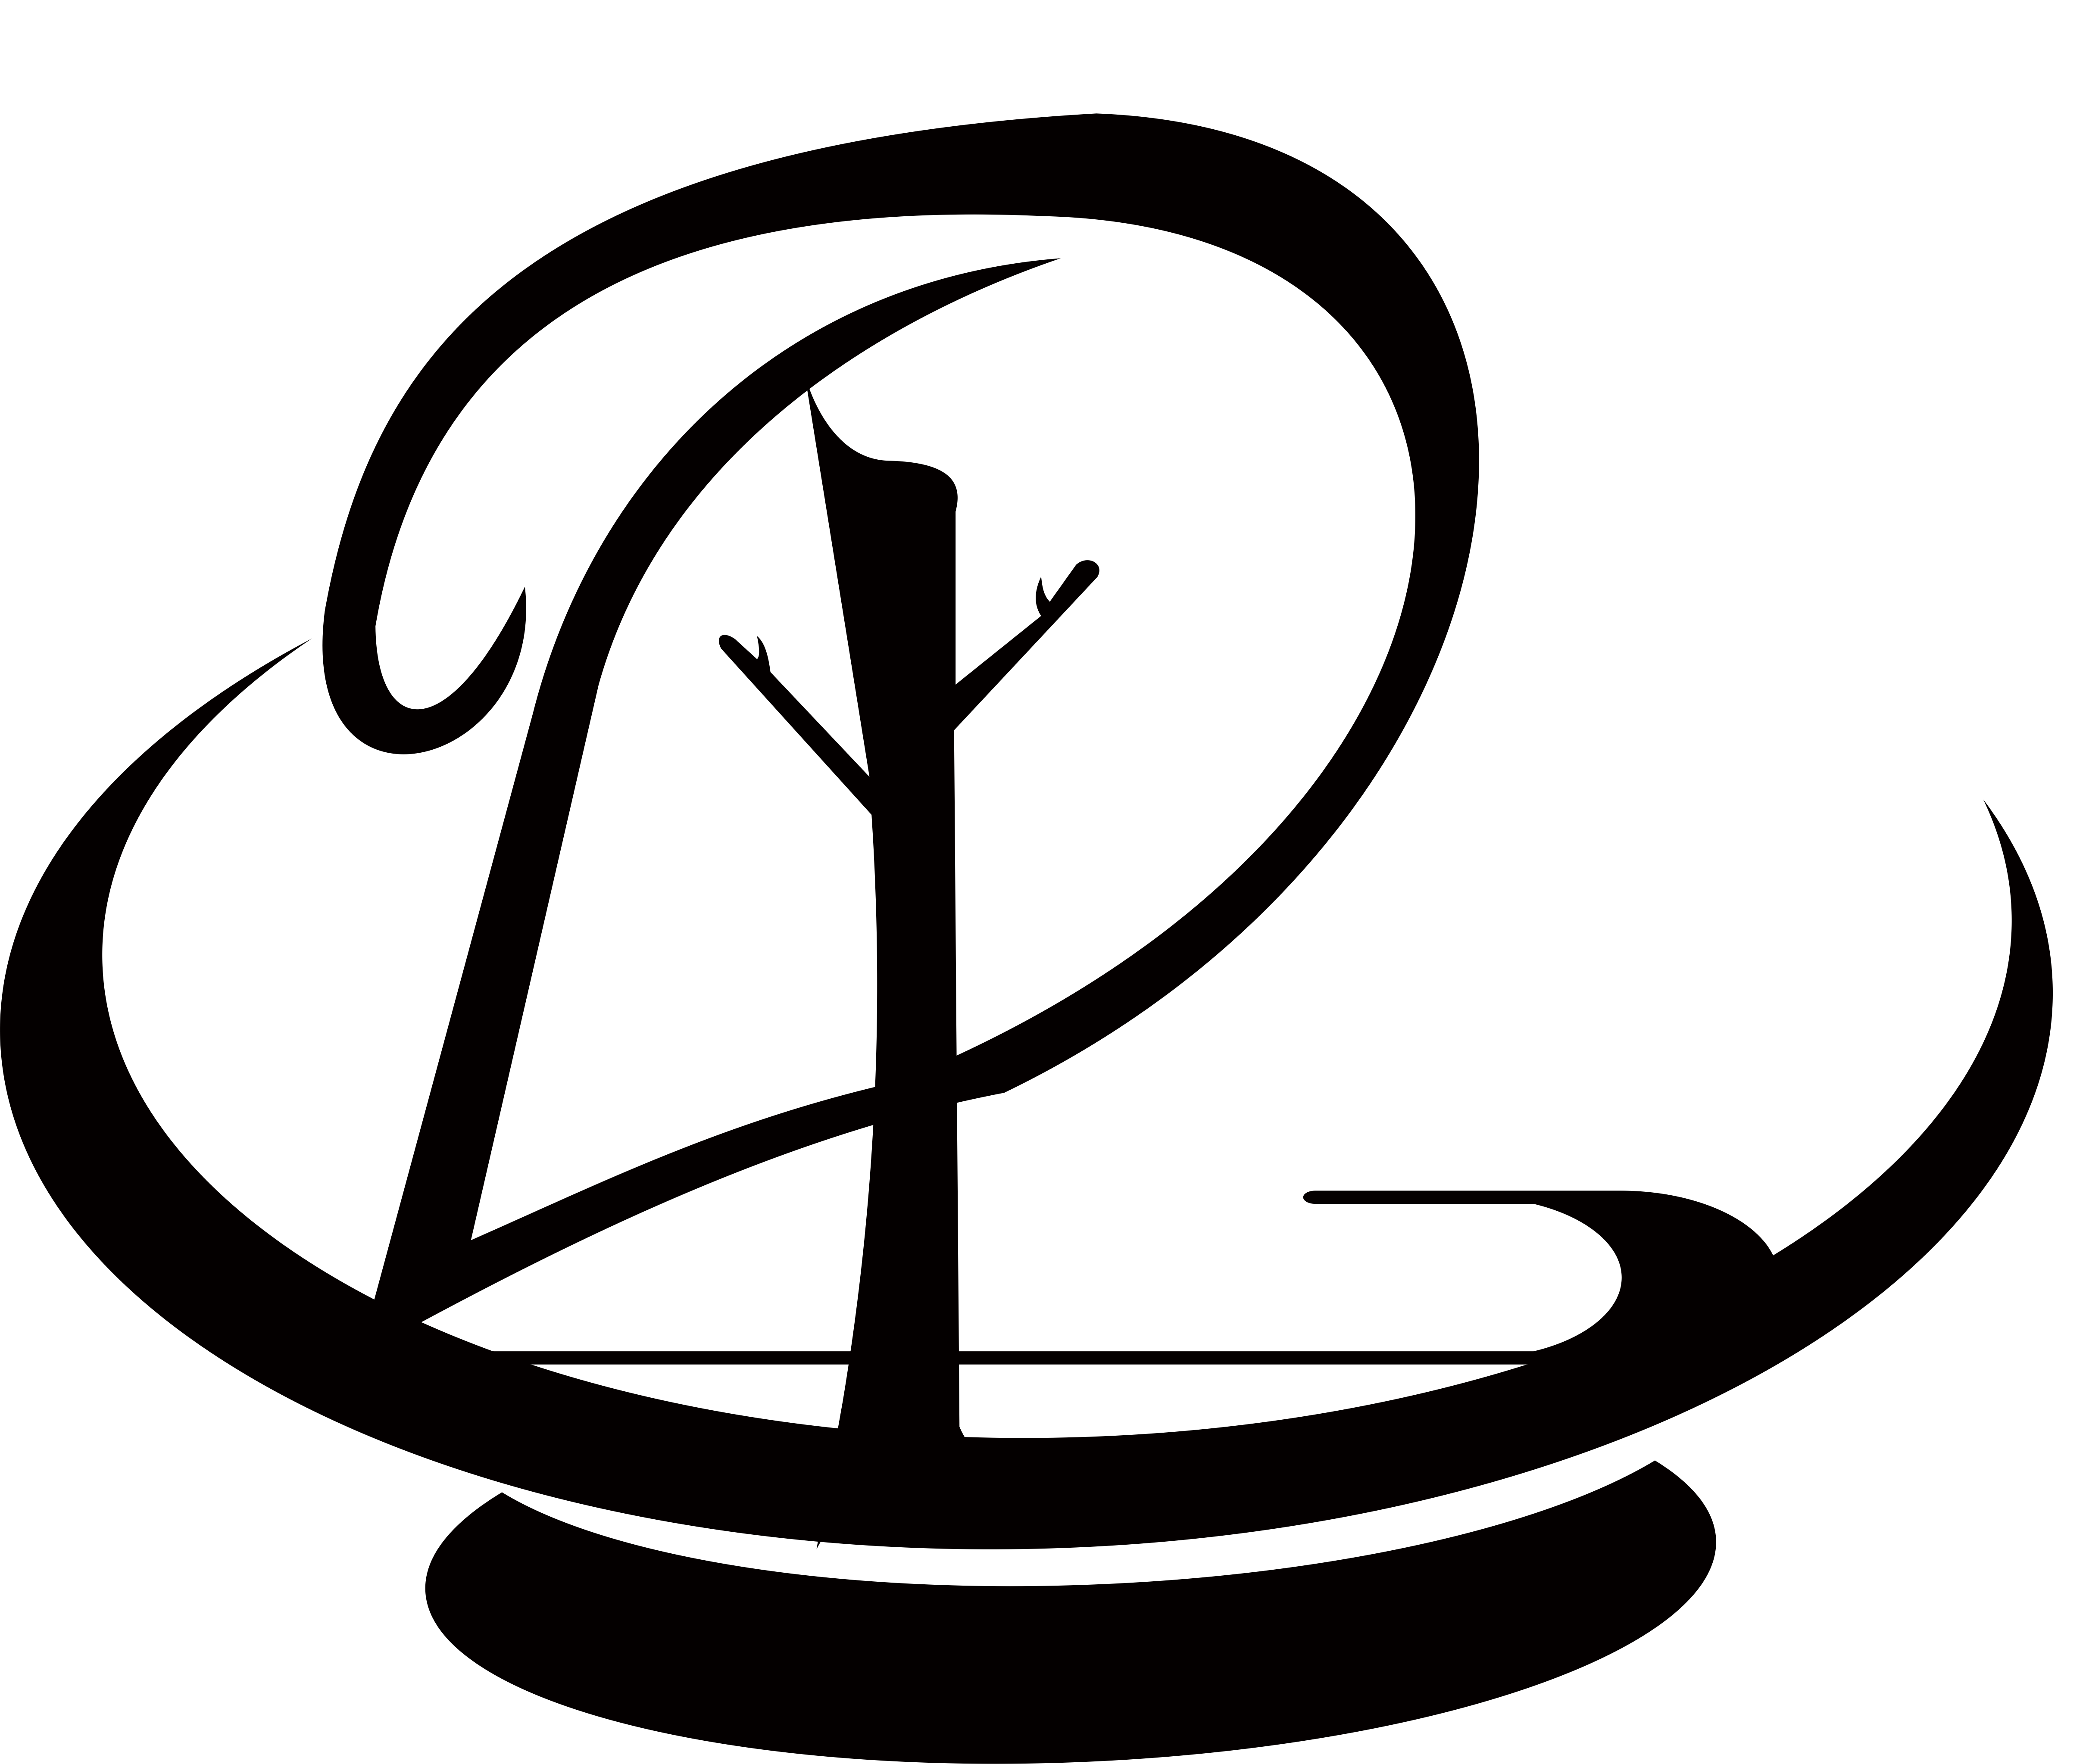 盘古Bpm Logo